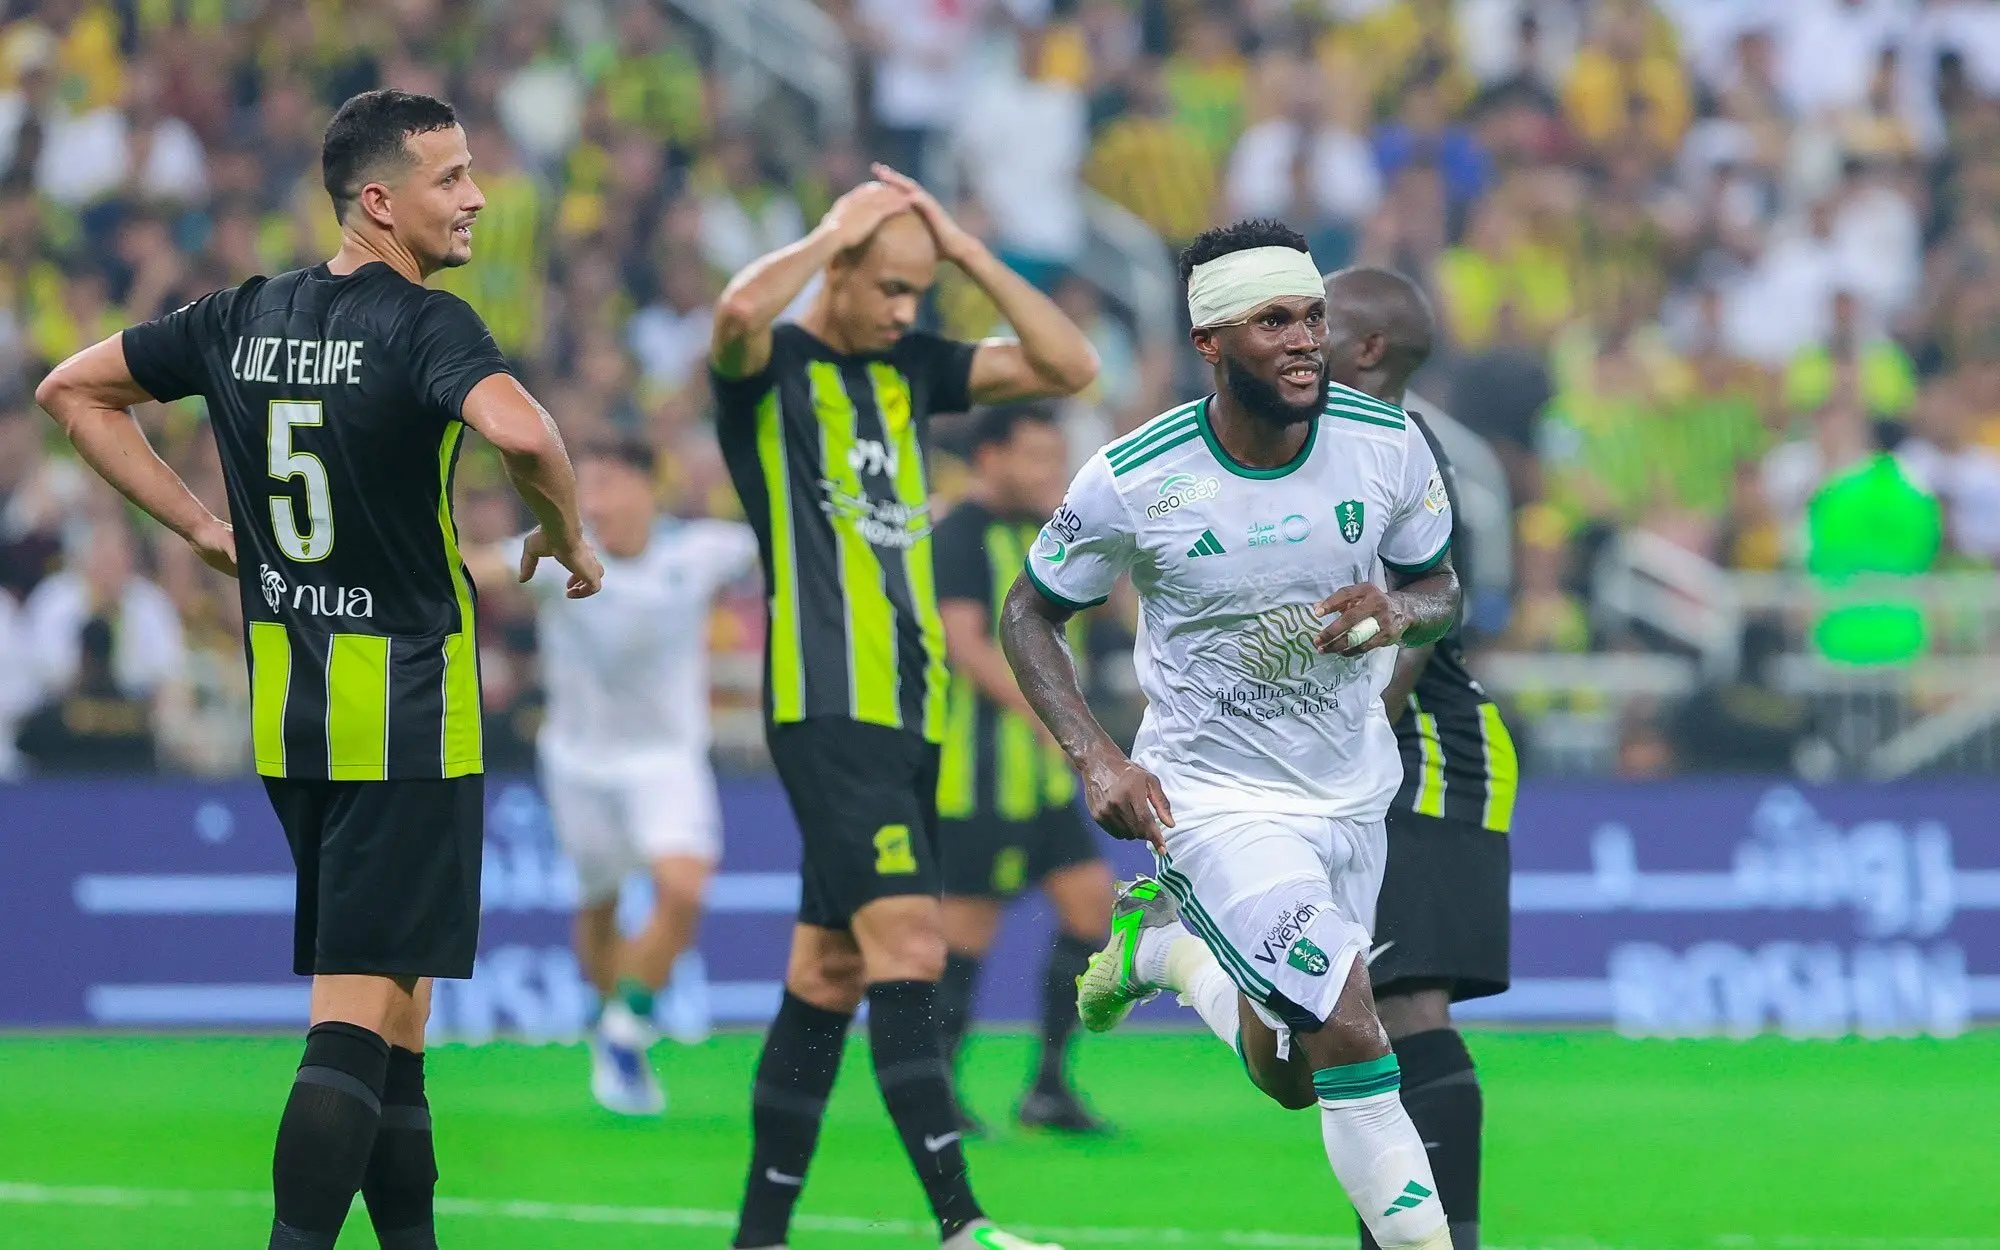 SAUDITA: Talisca marca, mas Al-Nassr empata em casa; Al-Ahli vence o Al-Ittihad fora de casa